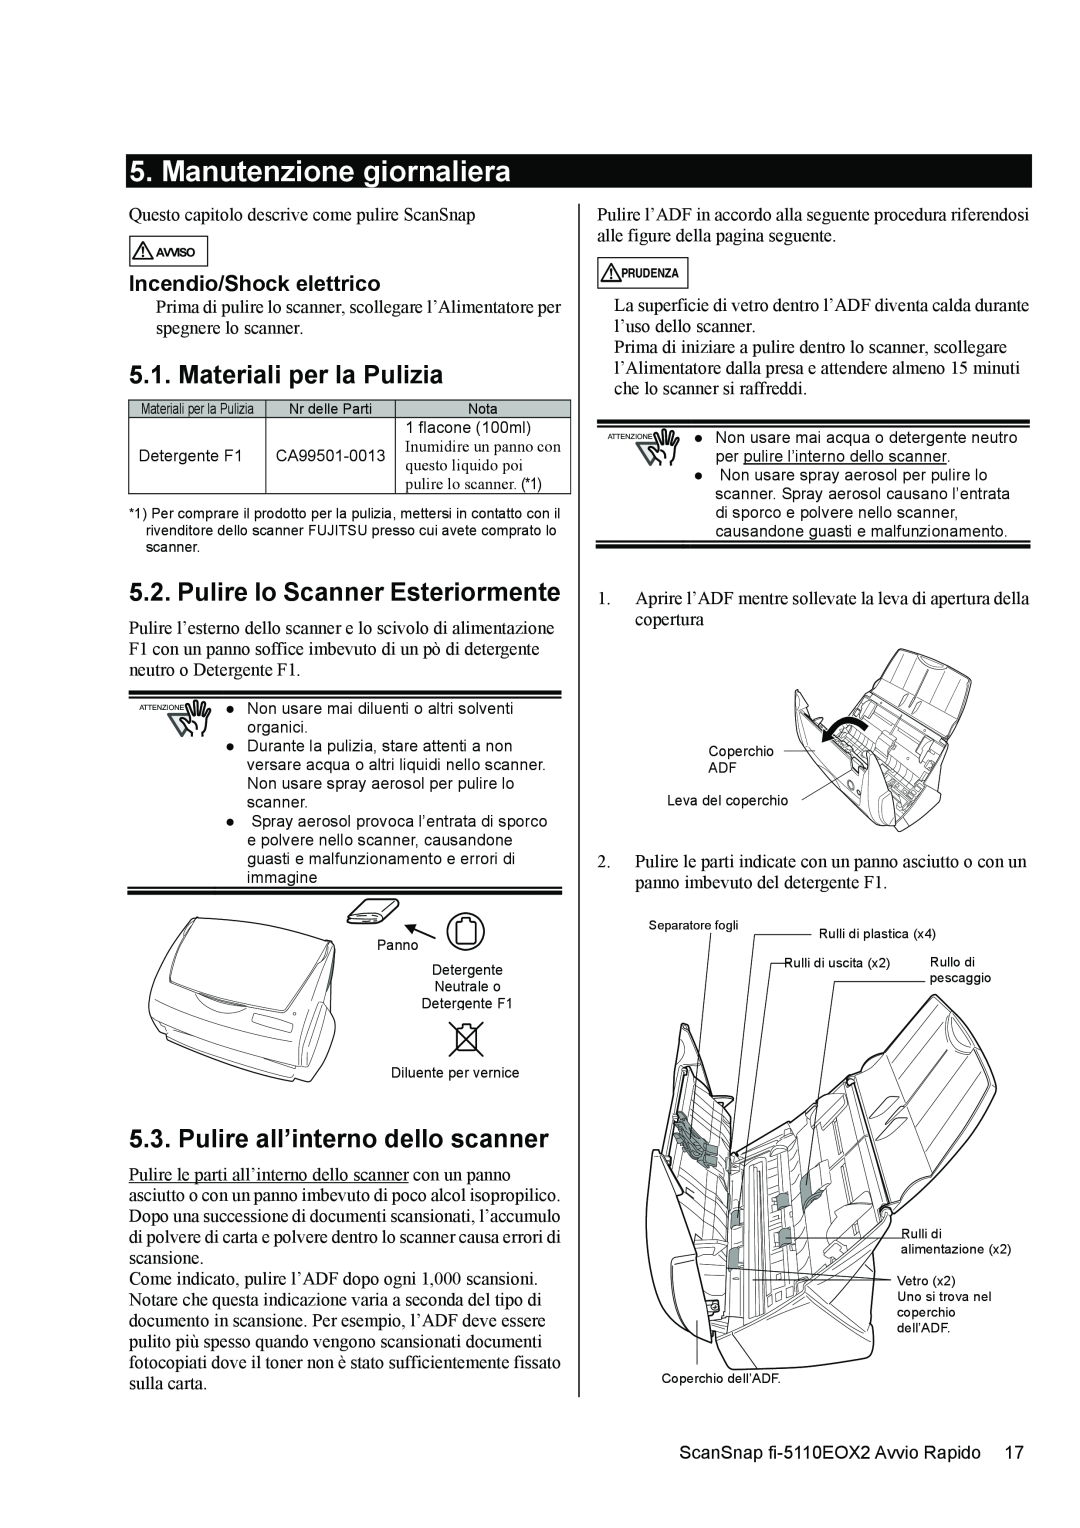 Fujitsu fi-5110EOX2 manual Manutenzione giornaliera, Materiali per la Pulizia, Pulire lo Scanner Esteriormente 